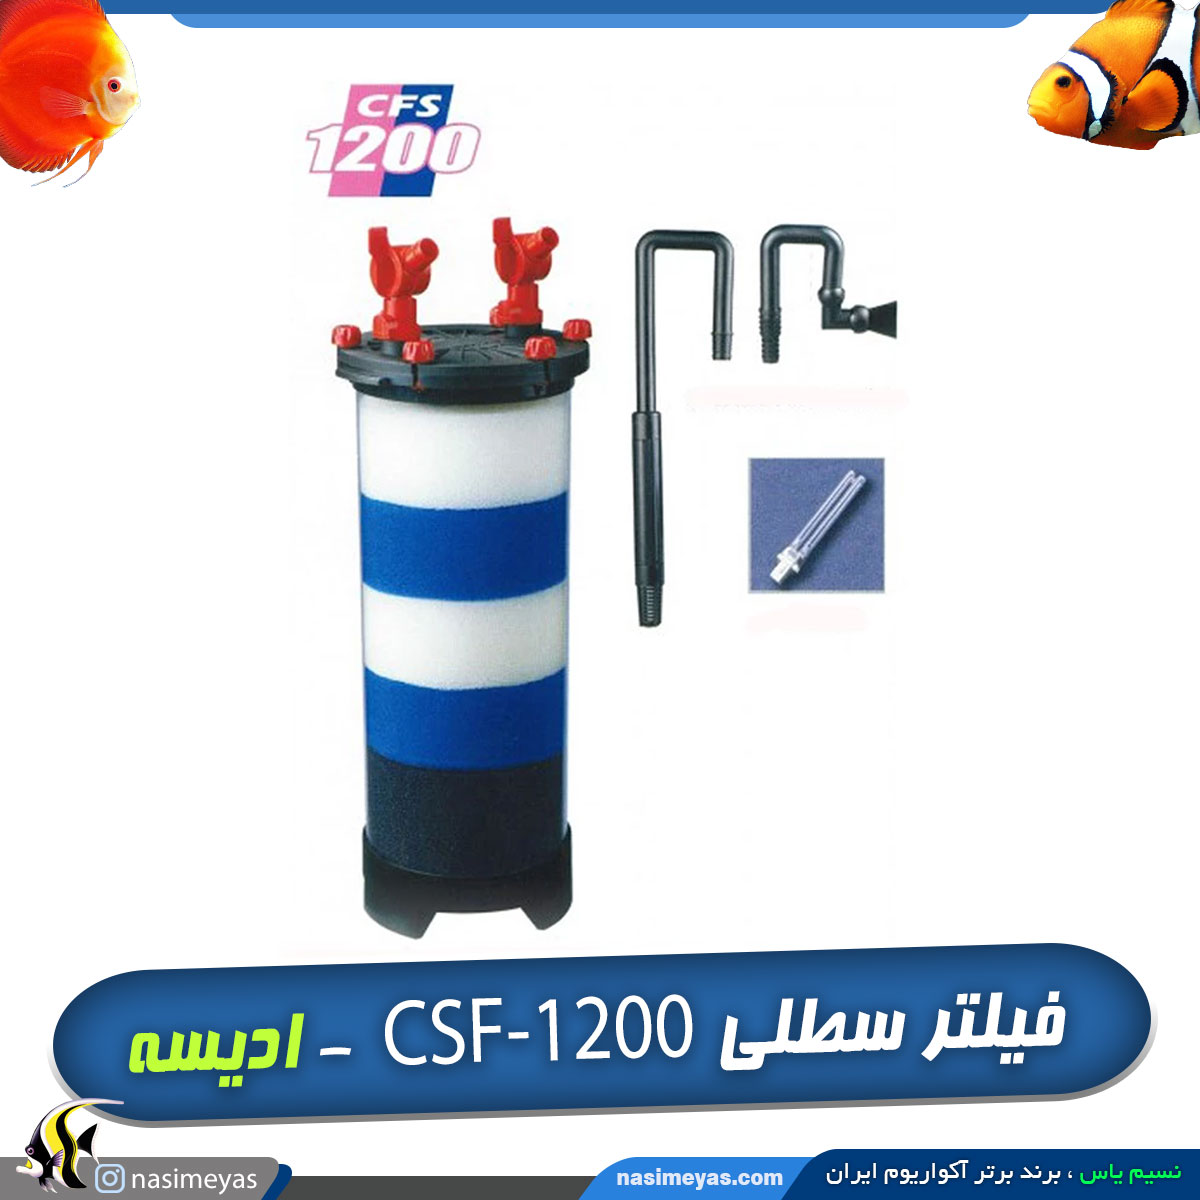 فیلتر سطلی یو وی دار CFS-1200 ادیسه